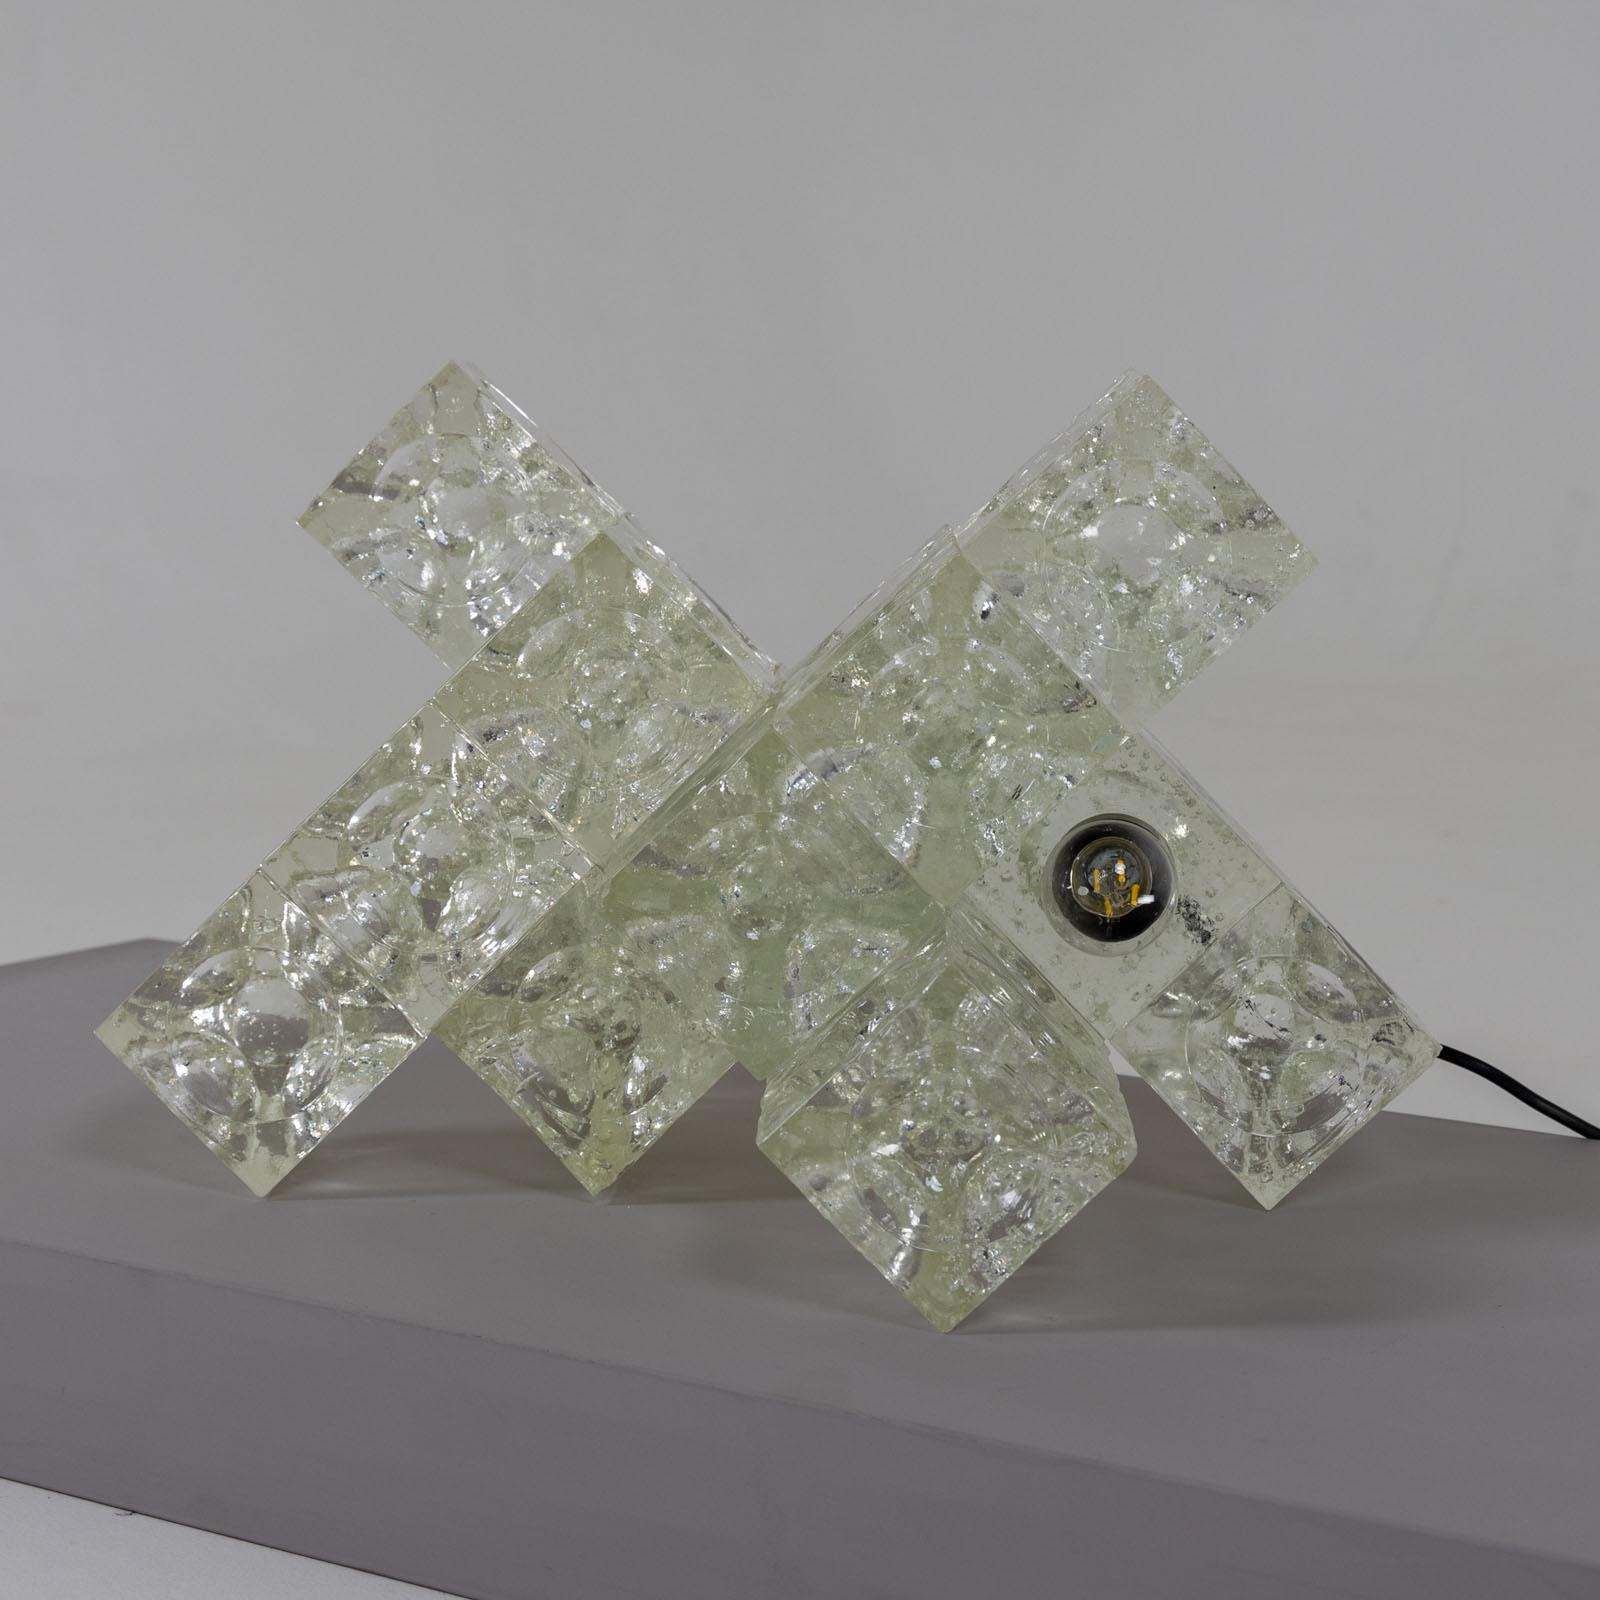 Lampe de table fabriquée à partir de cubes de verre clair assemblés, créée par Albano Poli dans les années 1960. Accompagnée d'un certificat d'authenticité, cette lampe porte la touche distinctive de la vision créative d'Albano Poli, ce qui en fait